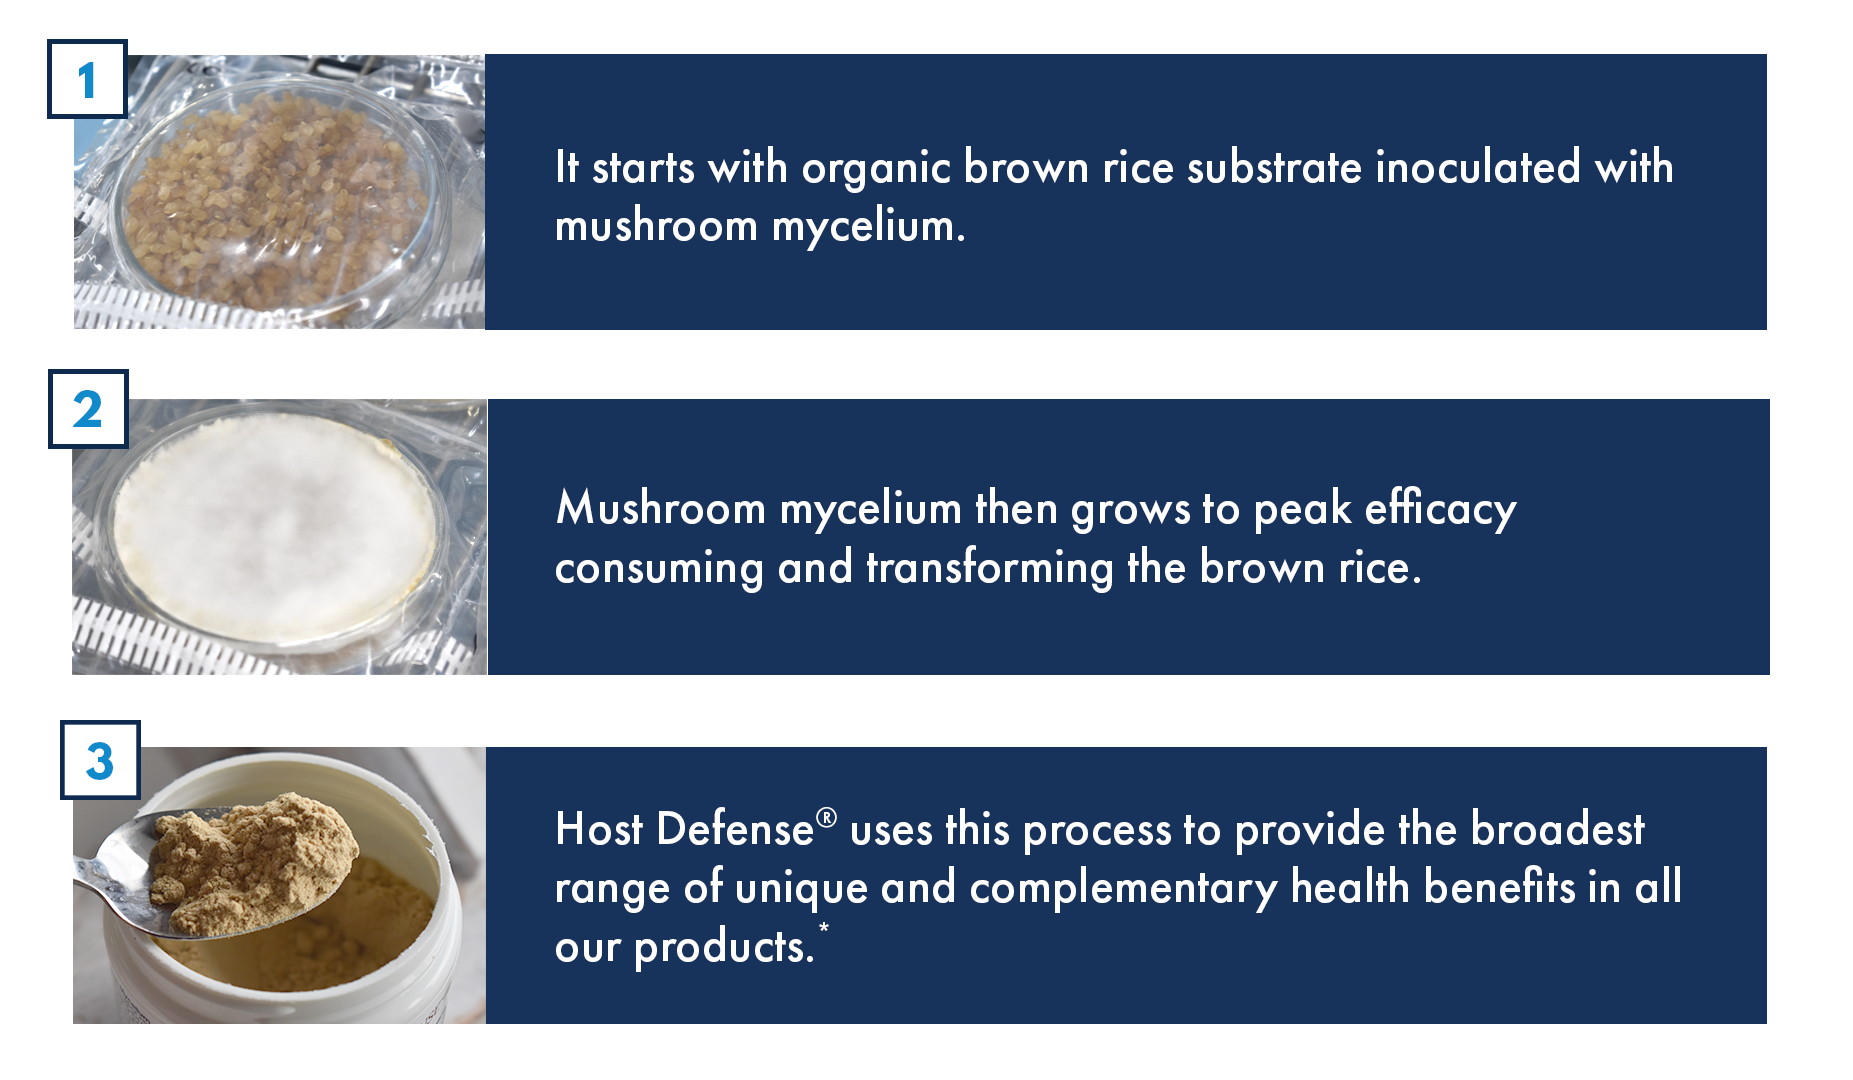 Growing Mushroom Mycelium on Brown Rice Substrate